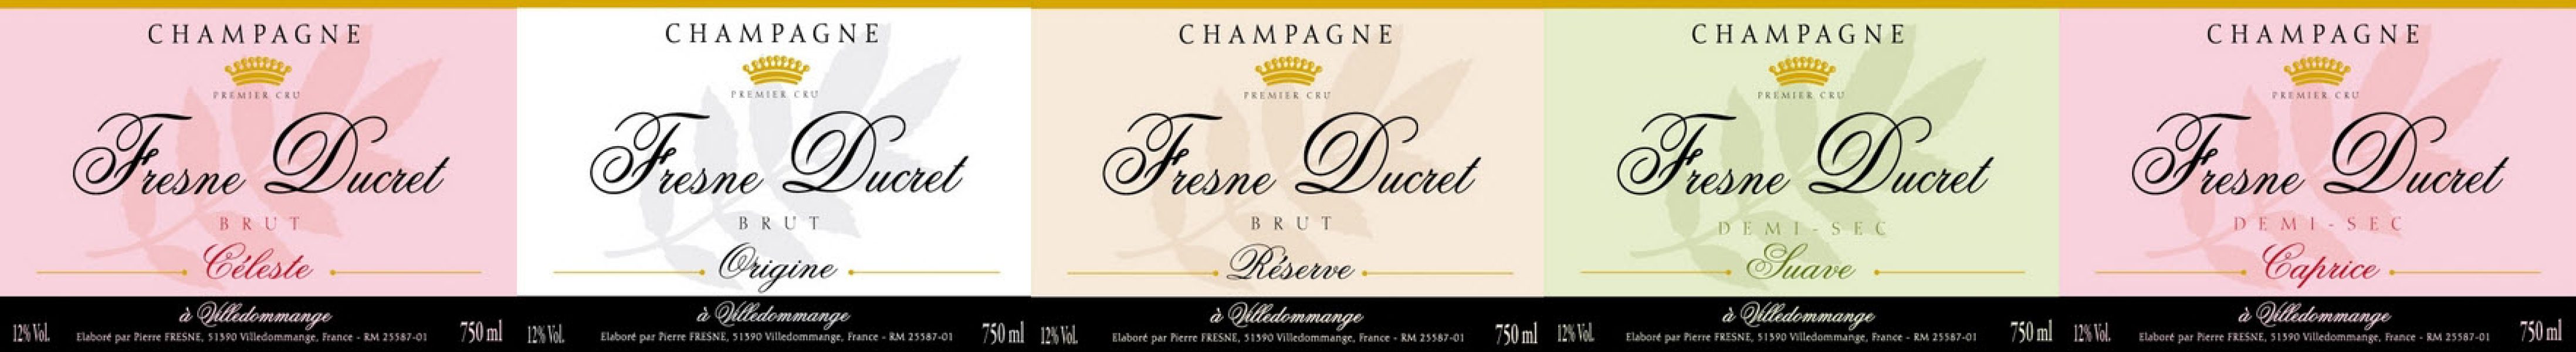 Champagner Fresne-Ducret